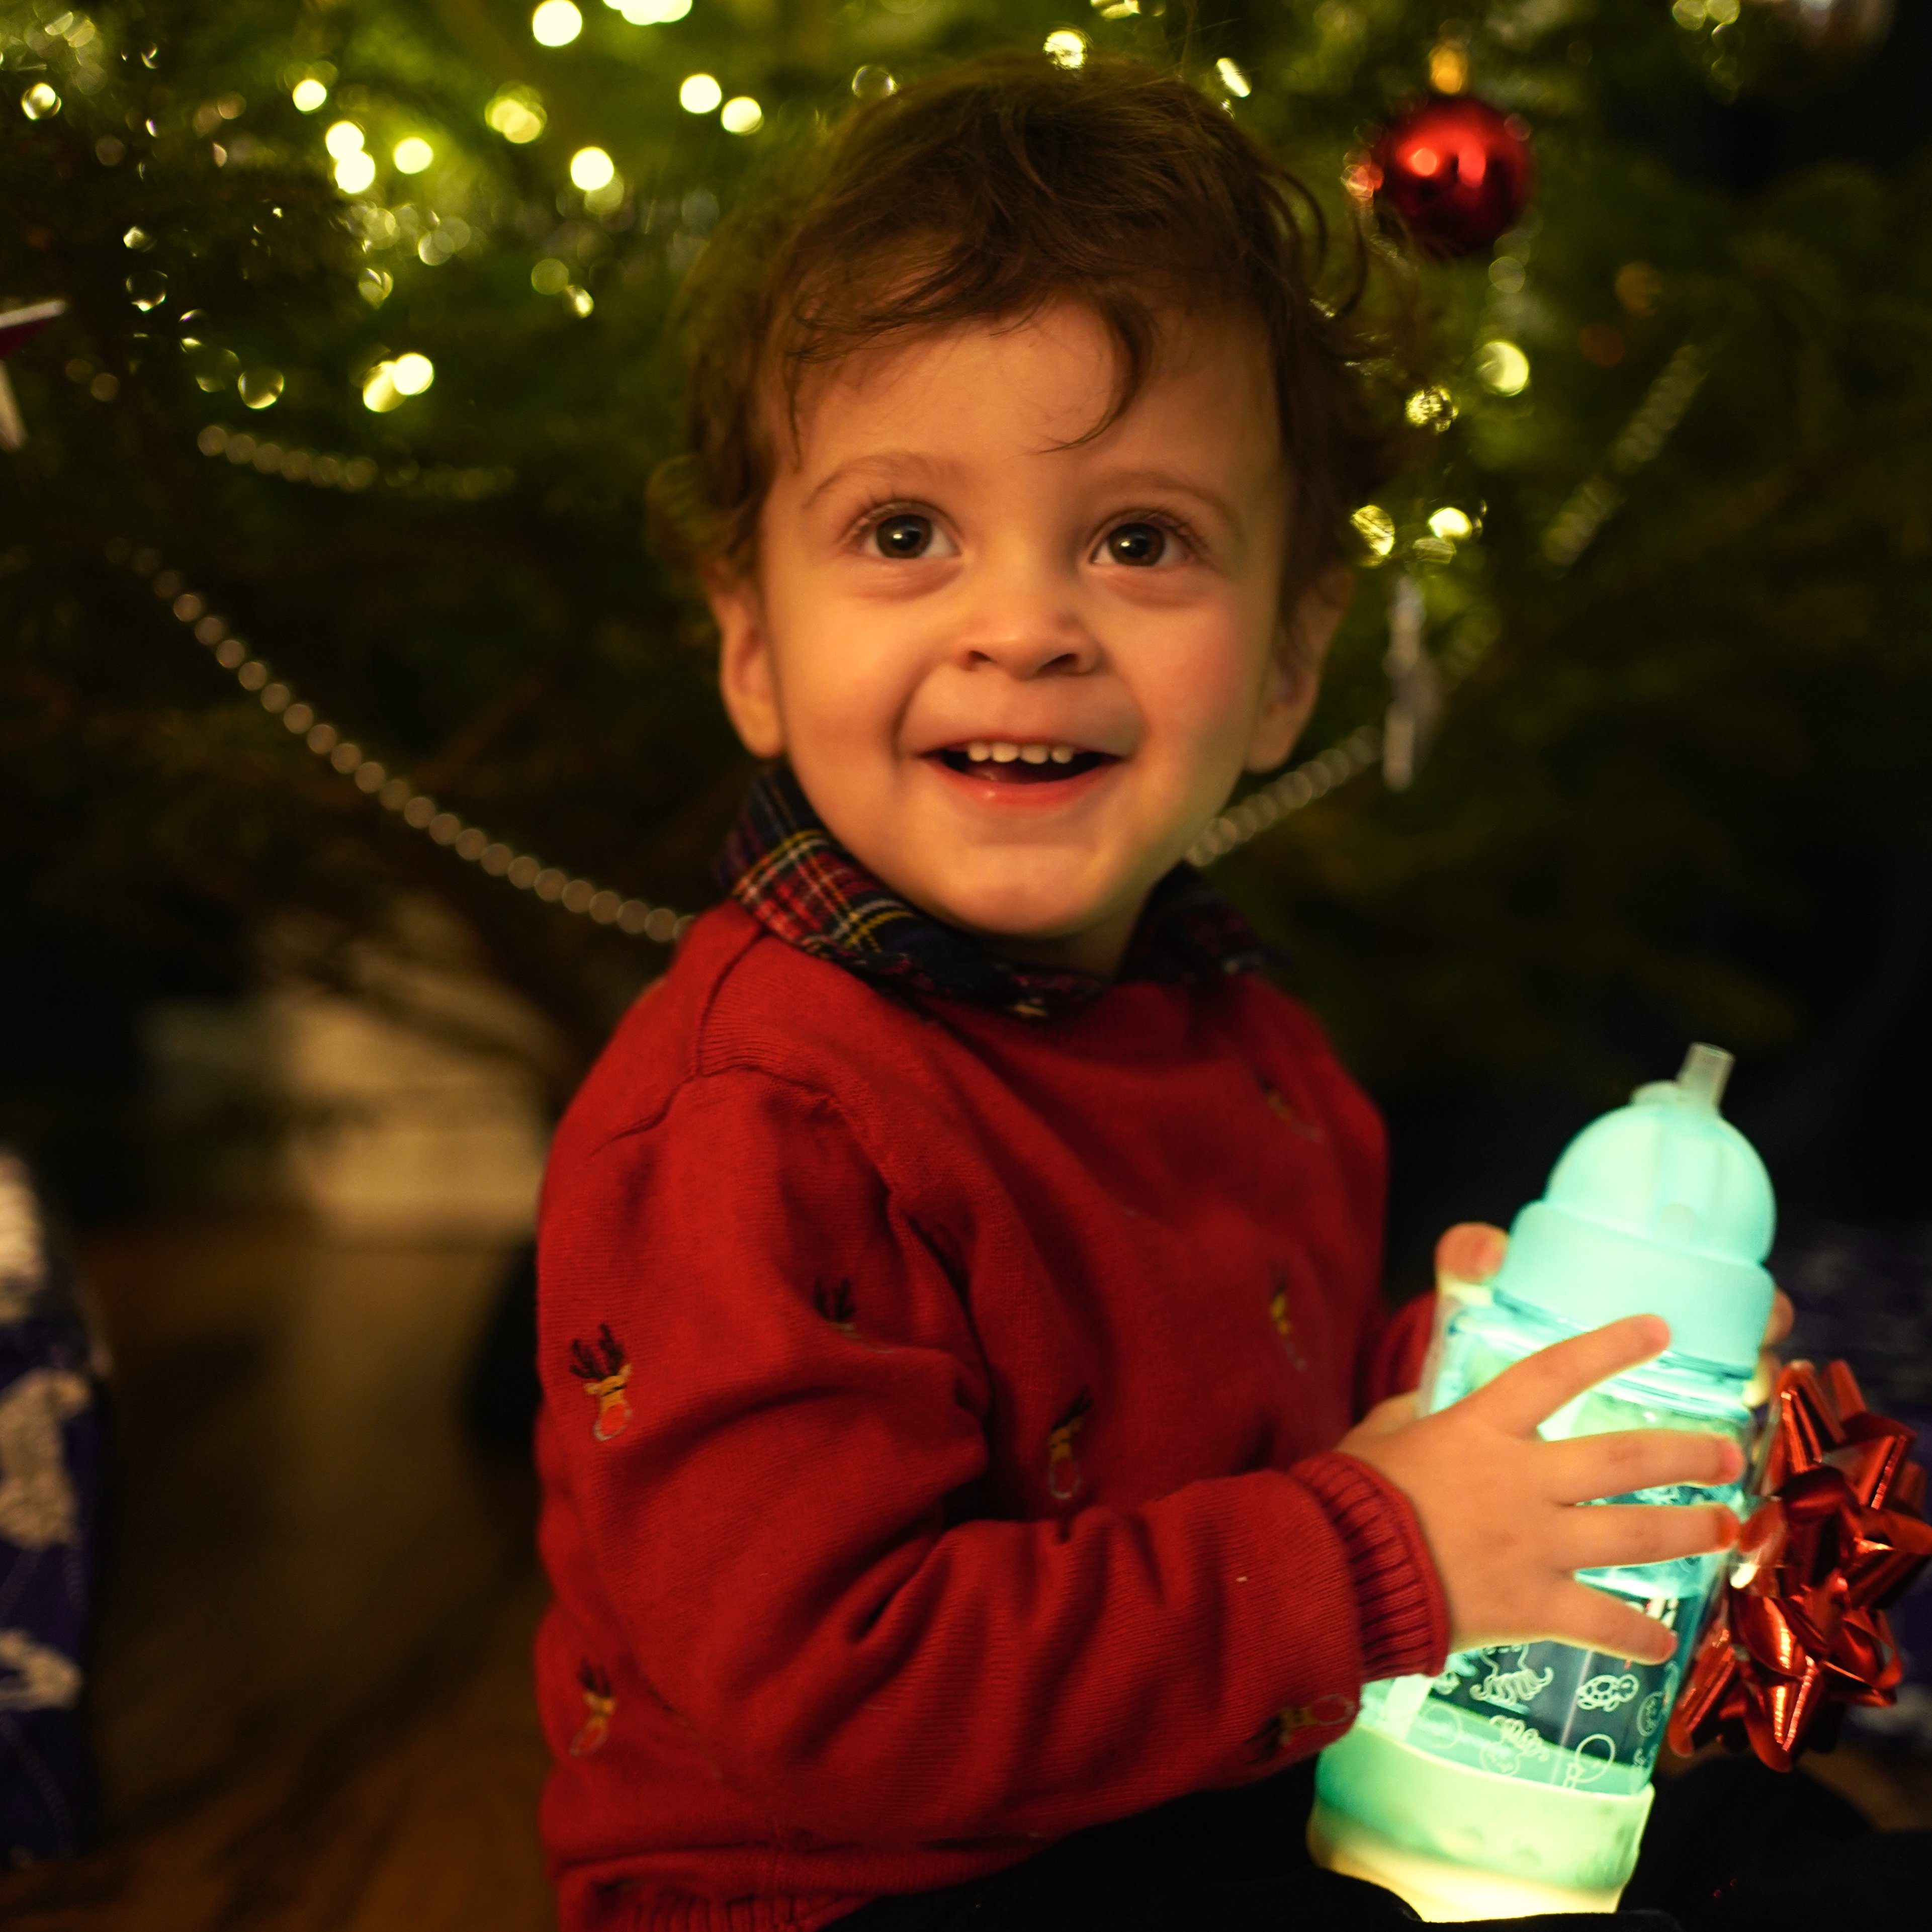 bumpli® Babyflasche Patentiertes Nachtlicht Timerfunktion Leuchtstufen + Babyflaschen, blau Milchflaschen, für Drei